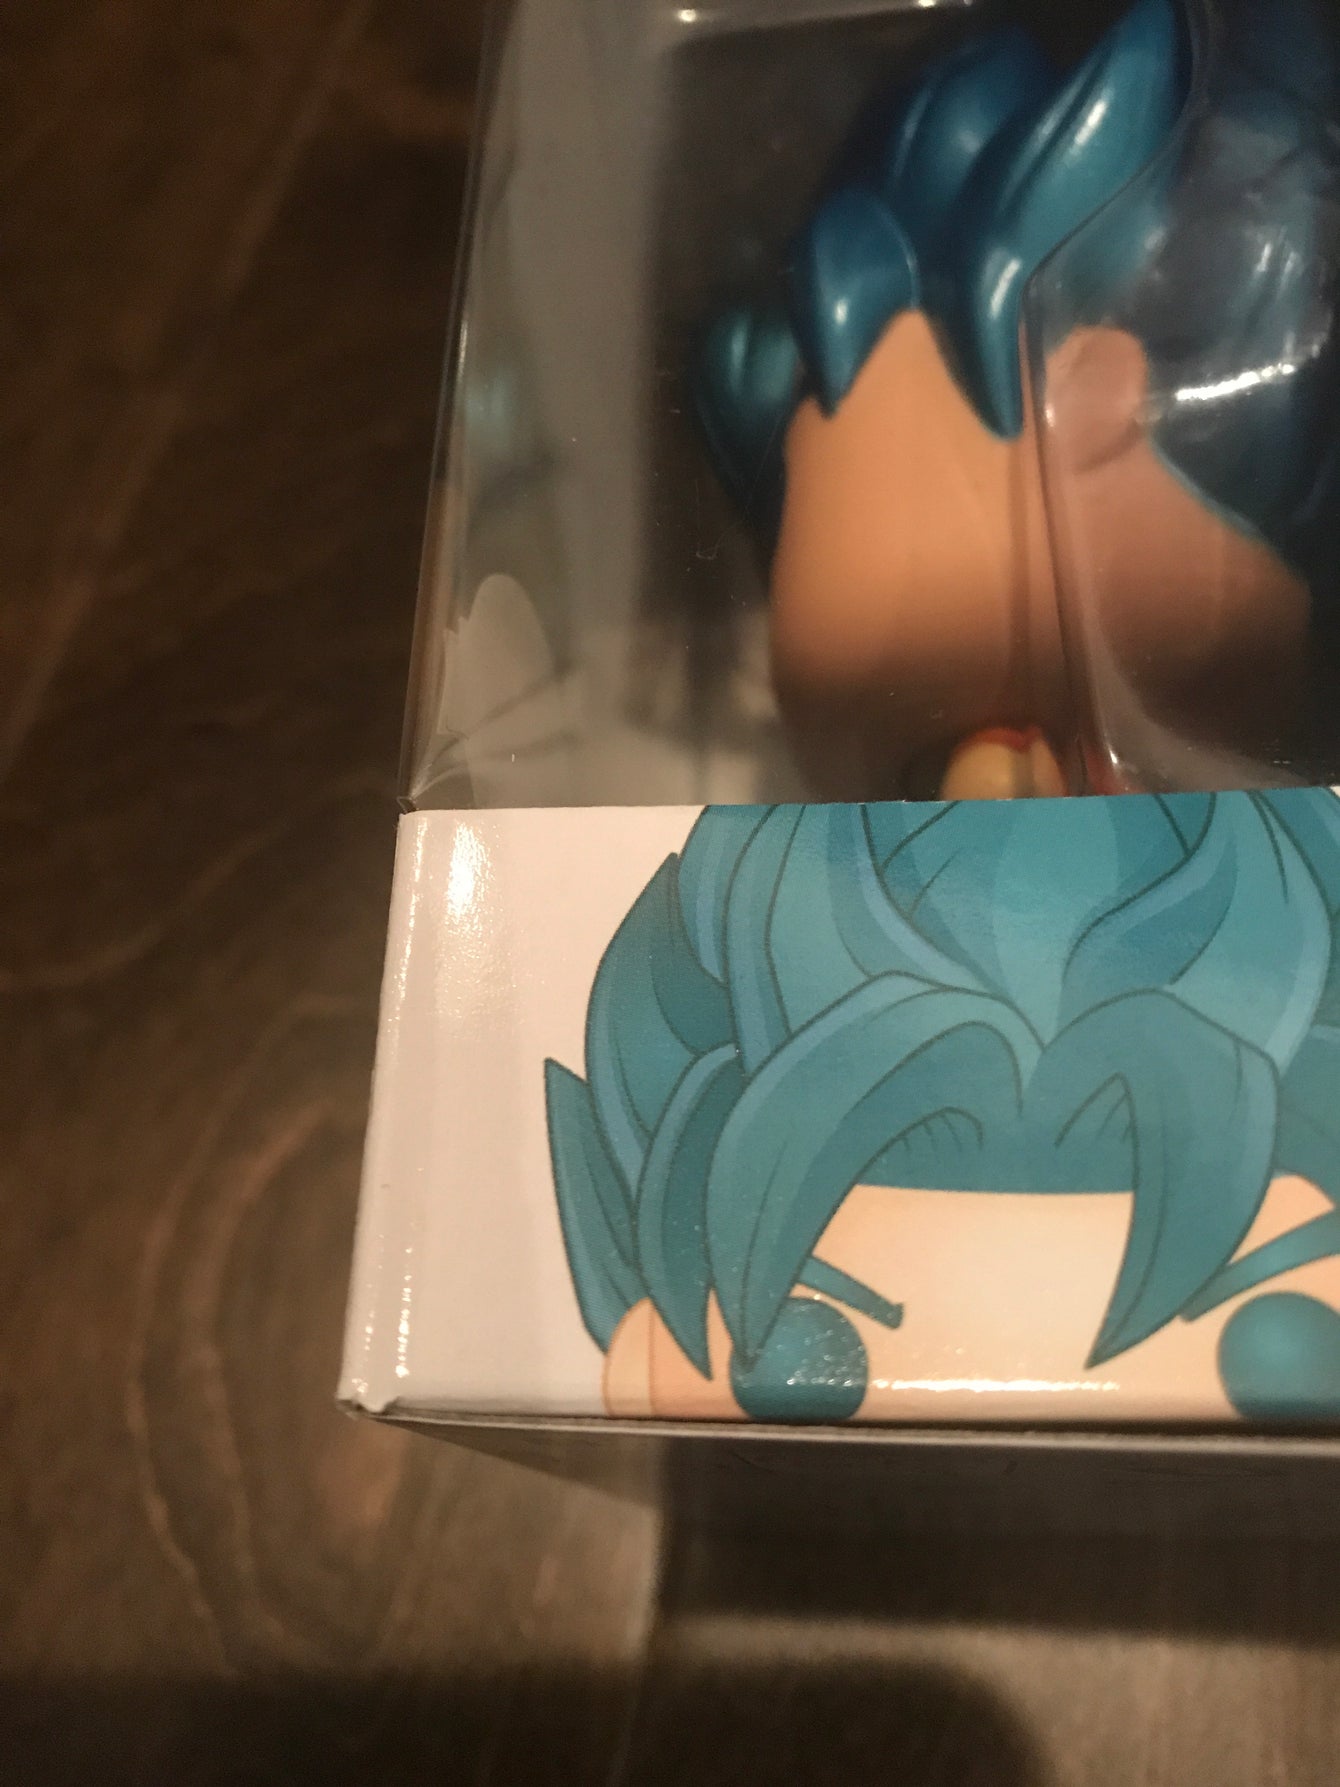 SSGSS Goku (Kamehameha) not mint LC3